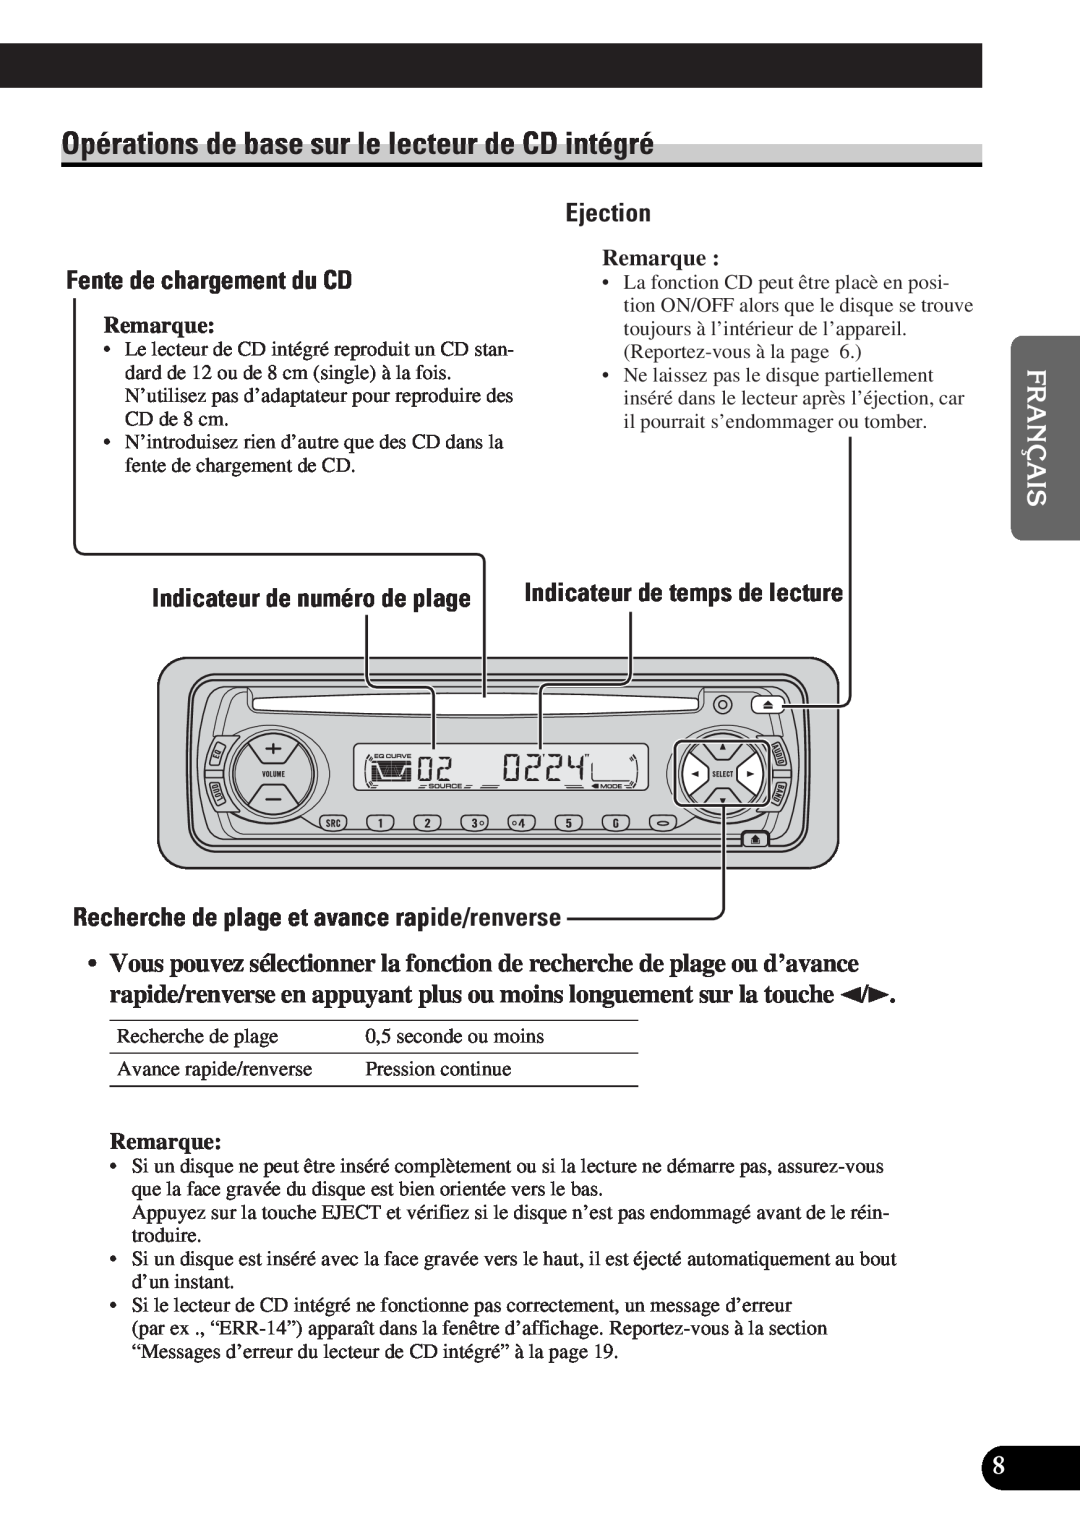 Pioneer DEH-12 Opérations de base sur le lecteur de CD intégré, Fente de chargement du CD, Ejection, English Français 